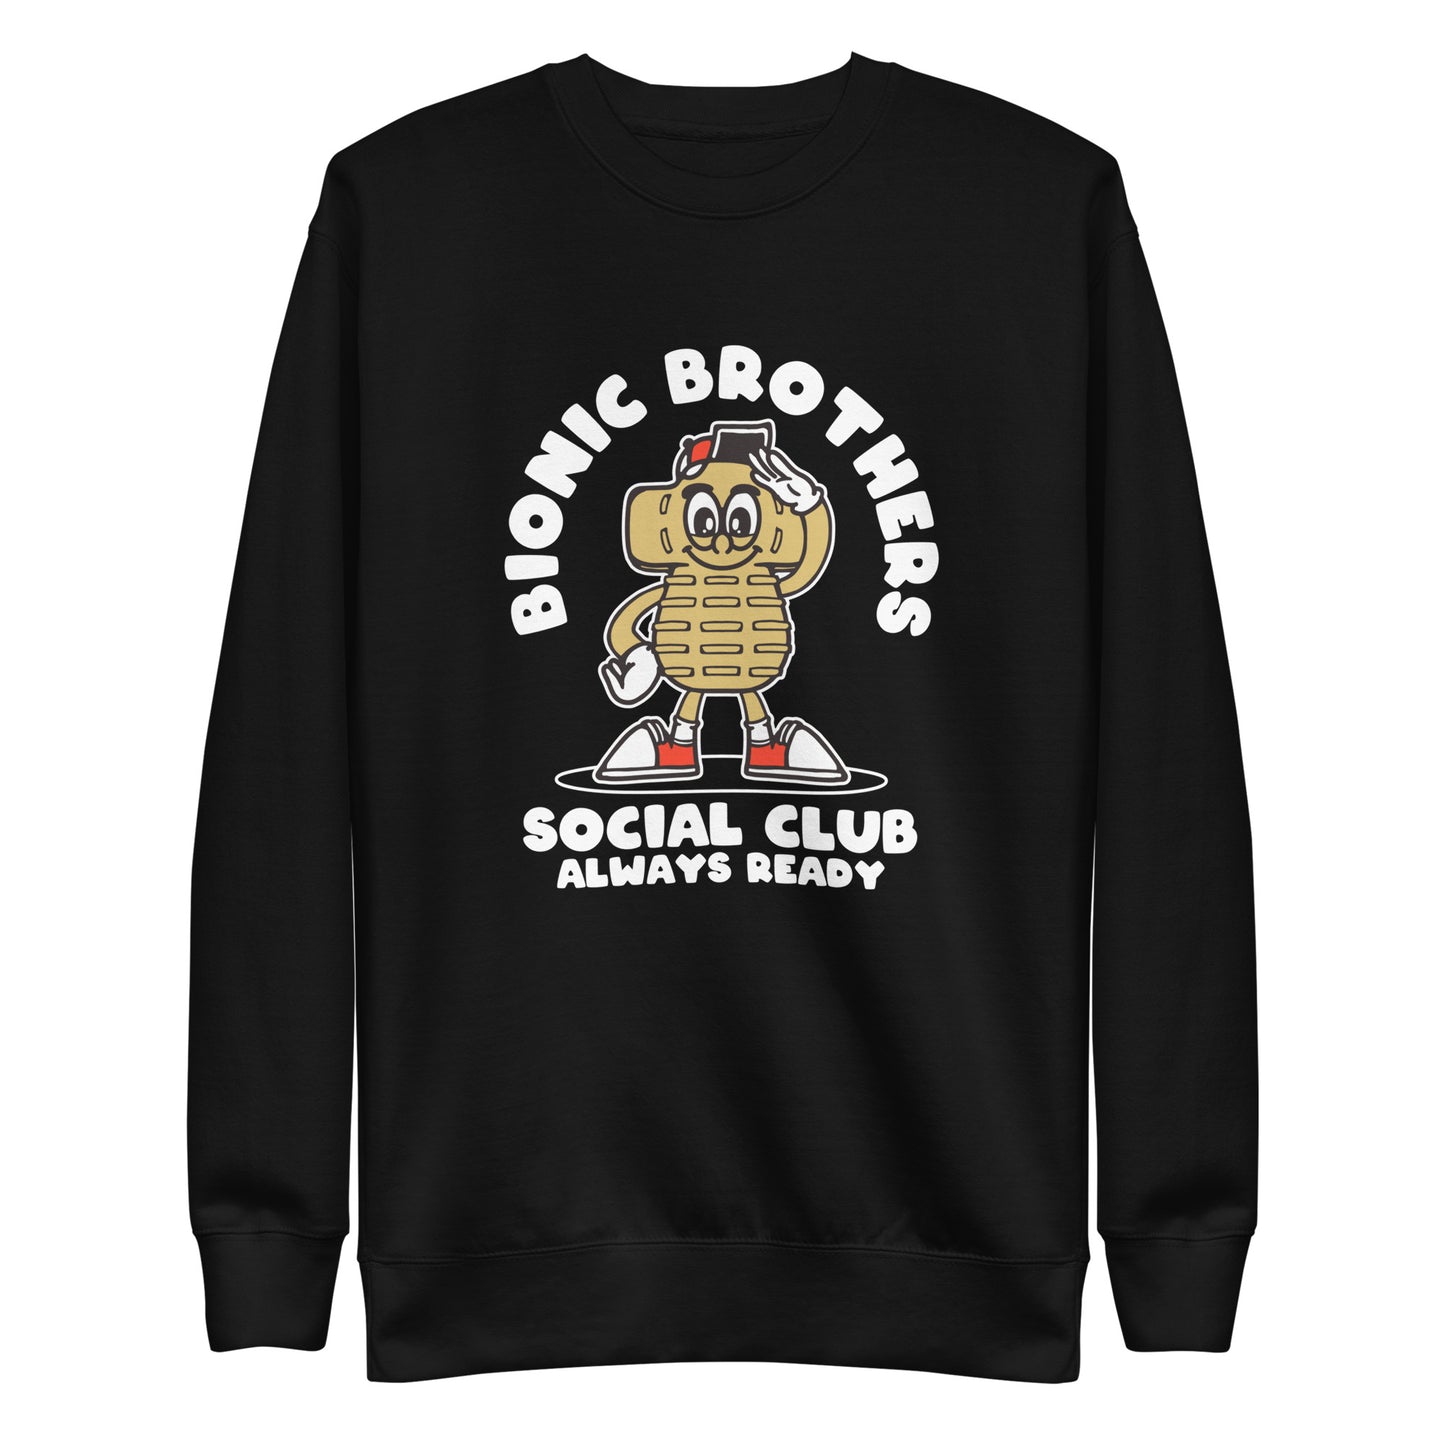 Bionic Brothers Sweatshirt